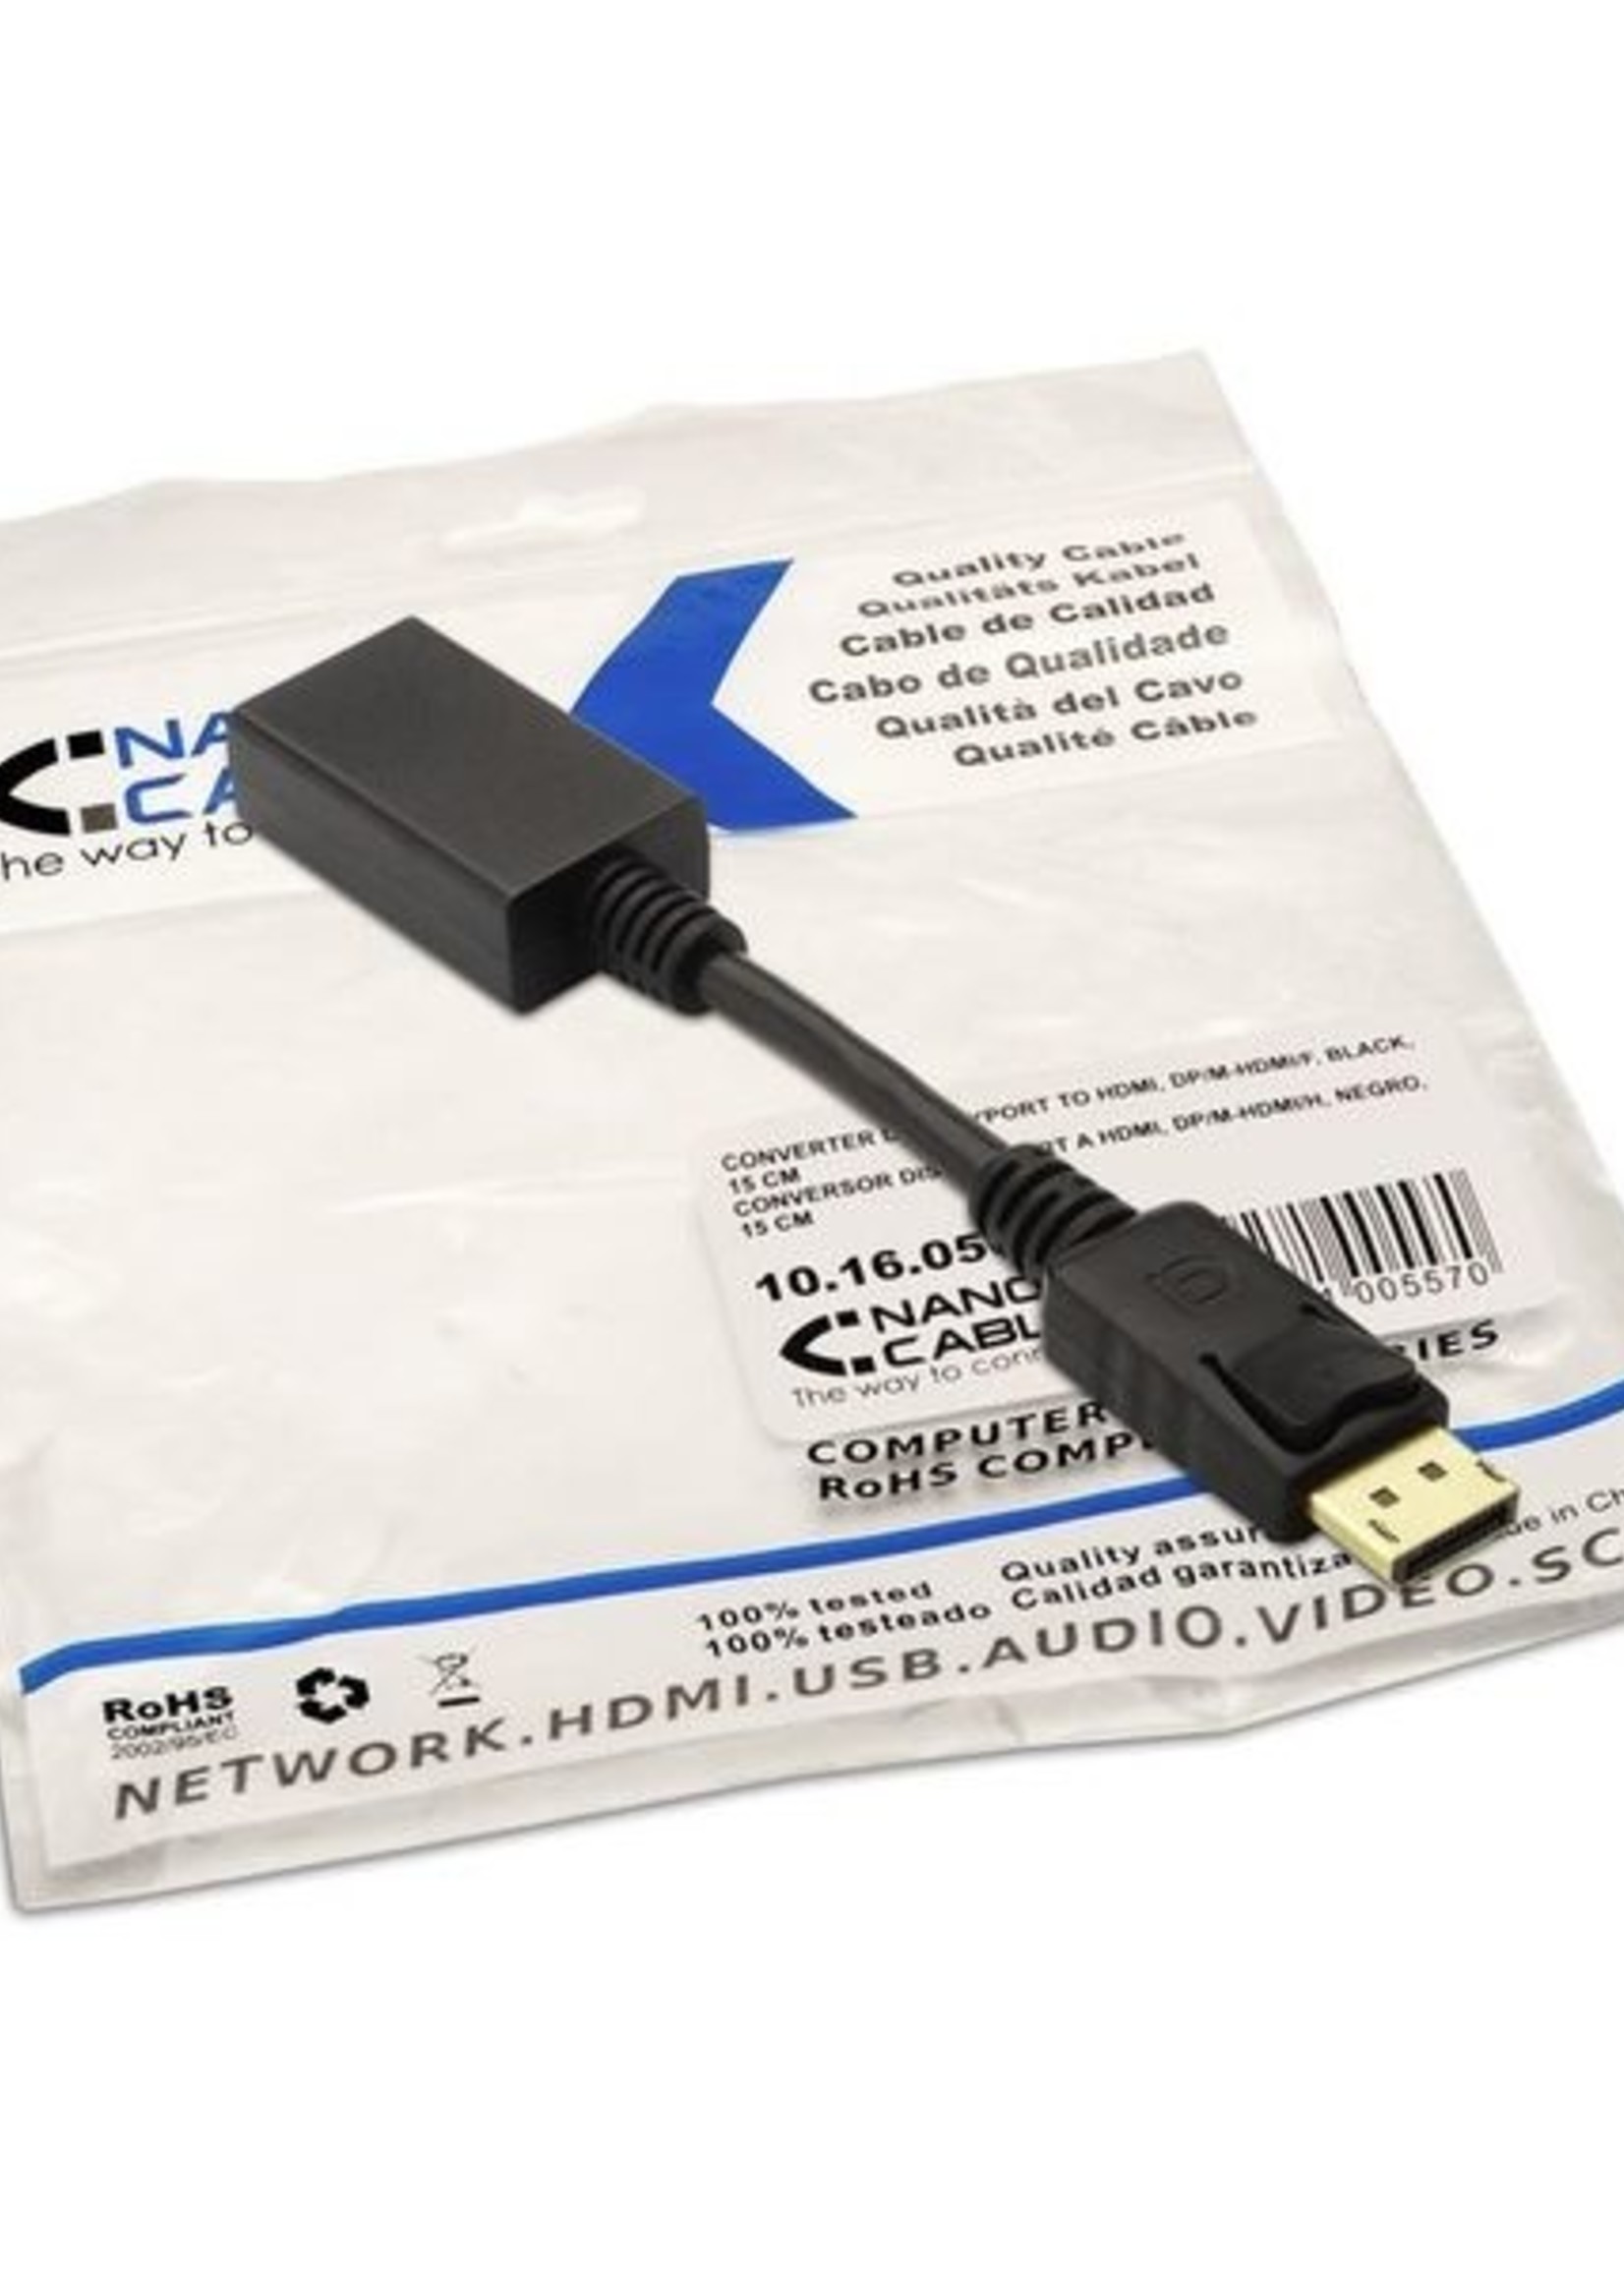 NANOCABLE Adaptador DisplayPort a HDMI NANOCABLE 10.16.0502 15 cm